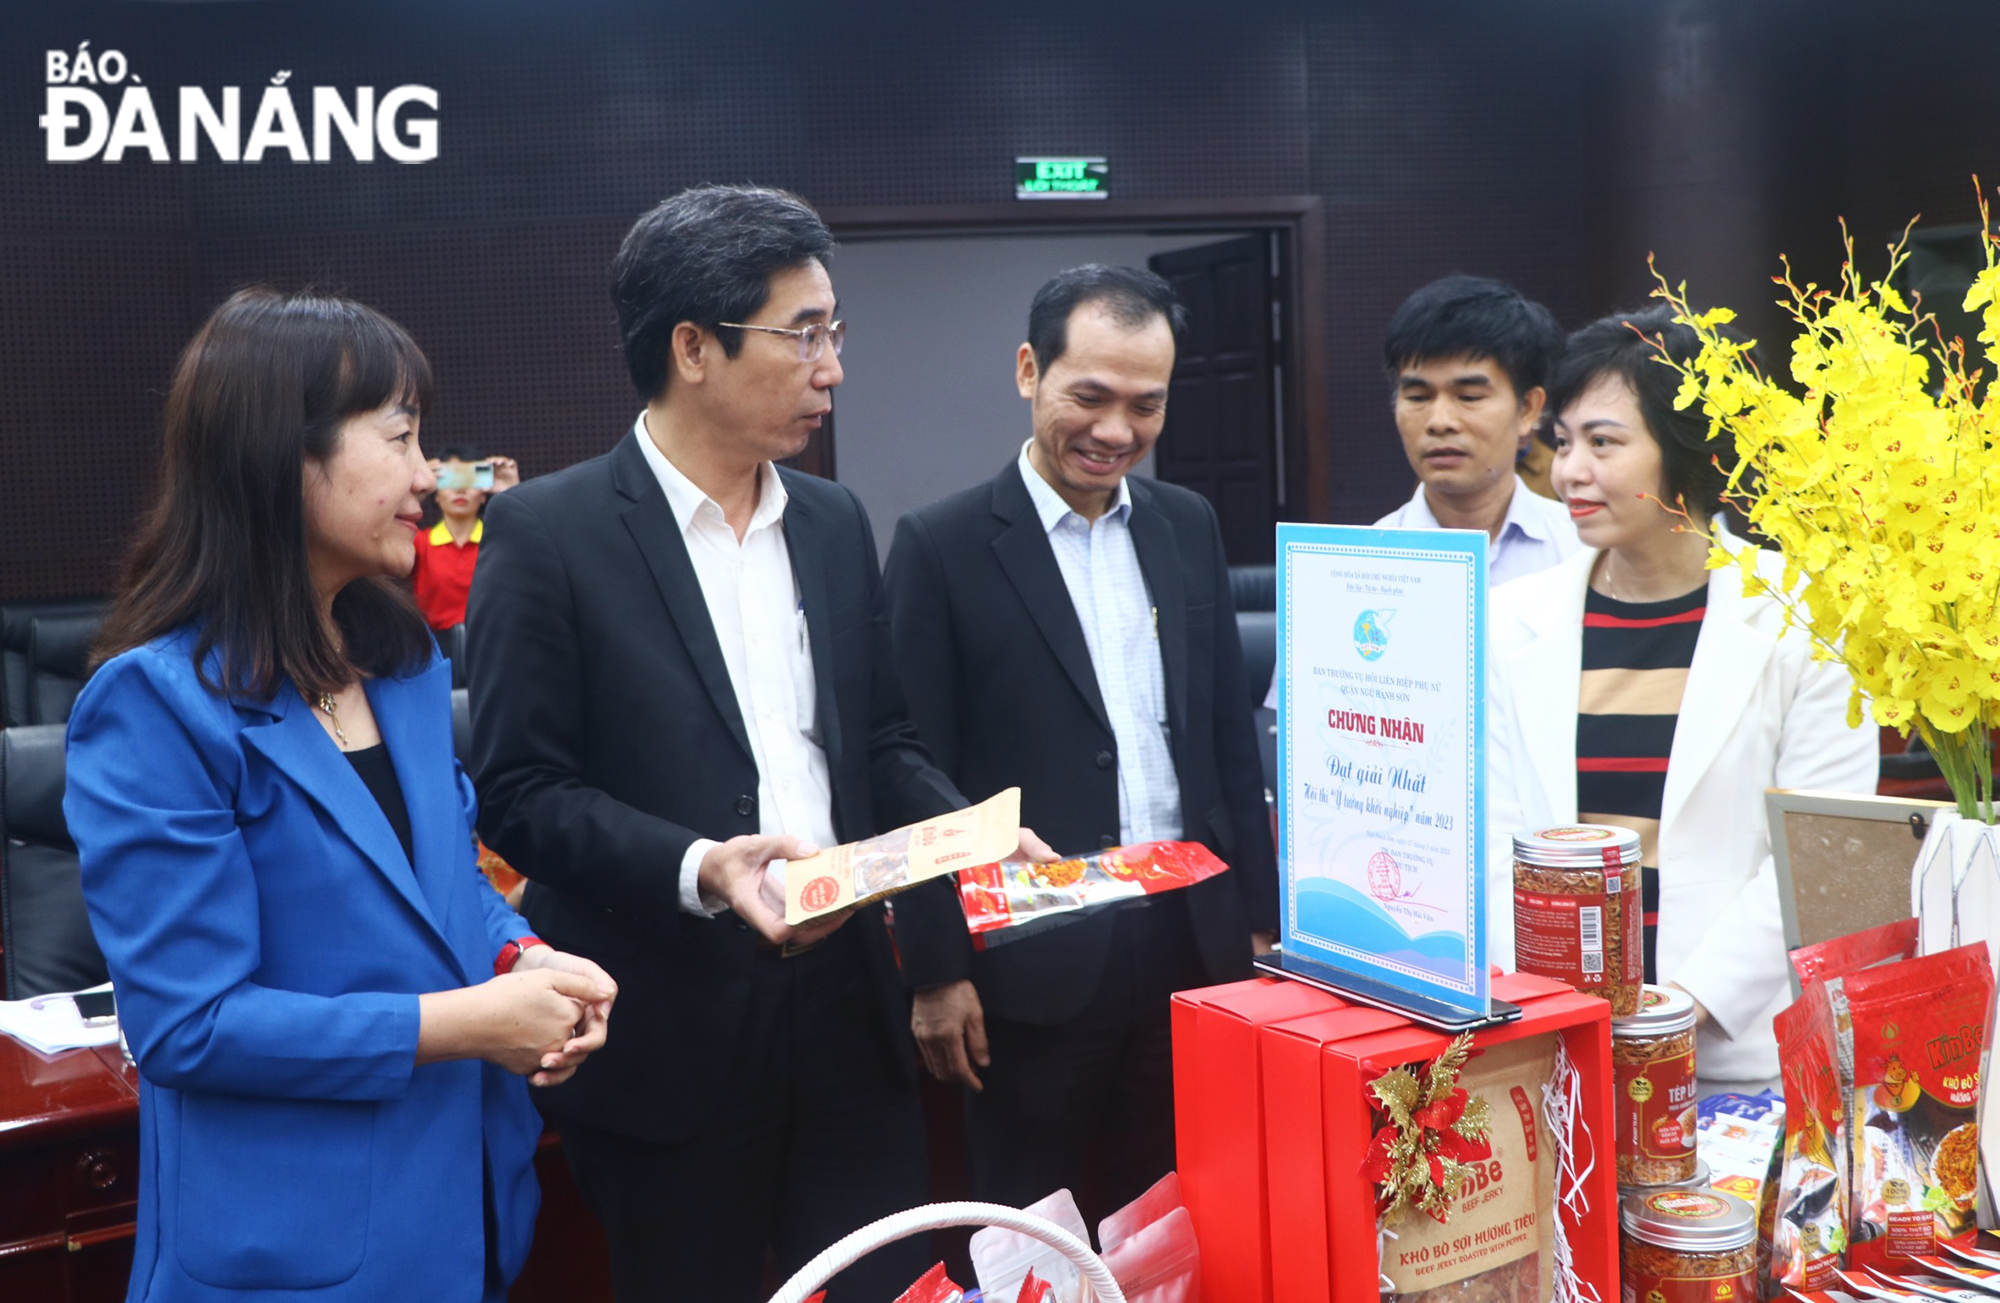 Phó Chủ tịch UBND thành phố Trần Chí Cường (thứ 2, từ trái sang) cùng thành viên hội đồng đánh giá tham quan khu vực trưng bày sản phẩm của các chủ thể. Ảnh: VĂN HOÀNG